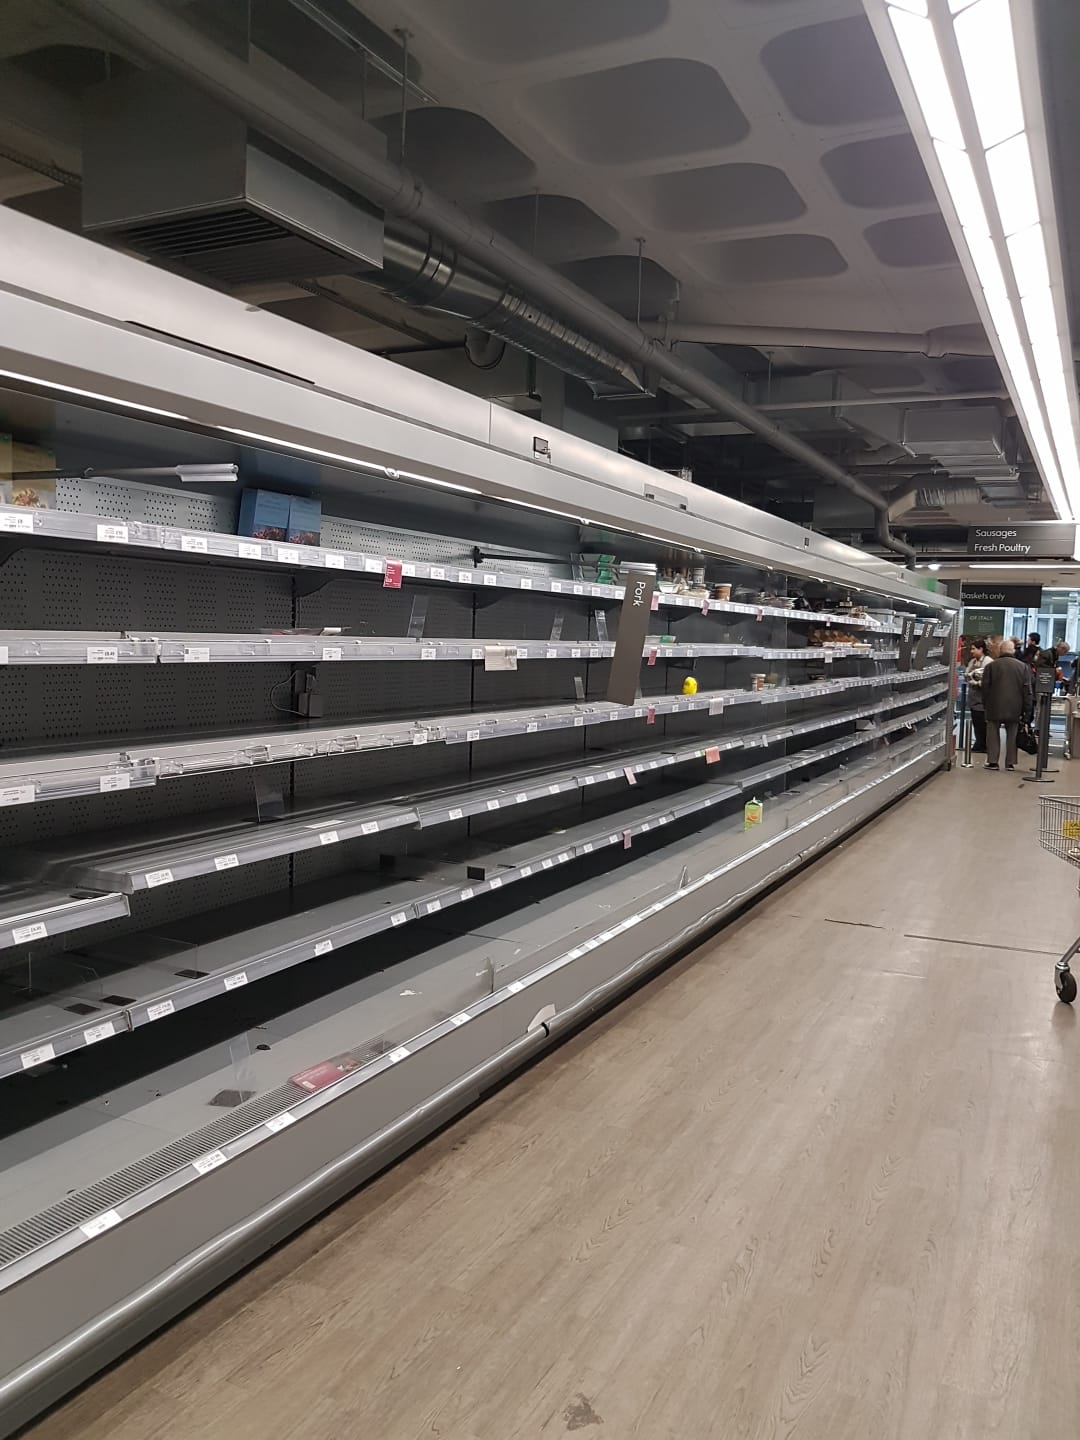 Londra, scaffali completamente vuoti in un supermercato. Fonte: Mariaelena Agostini